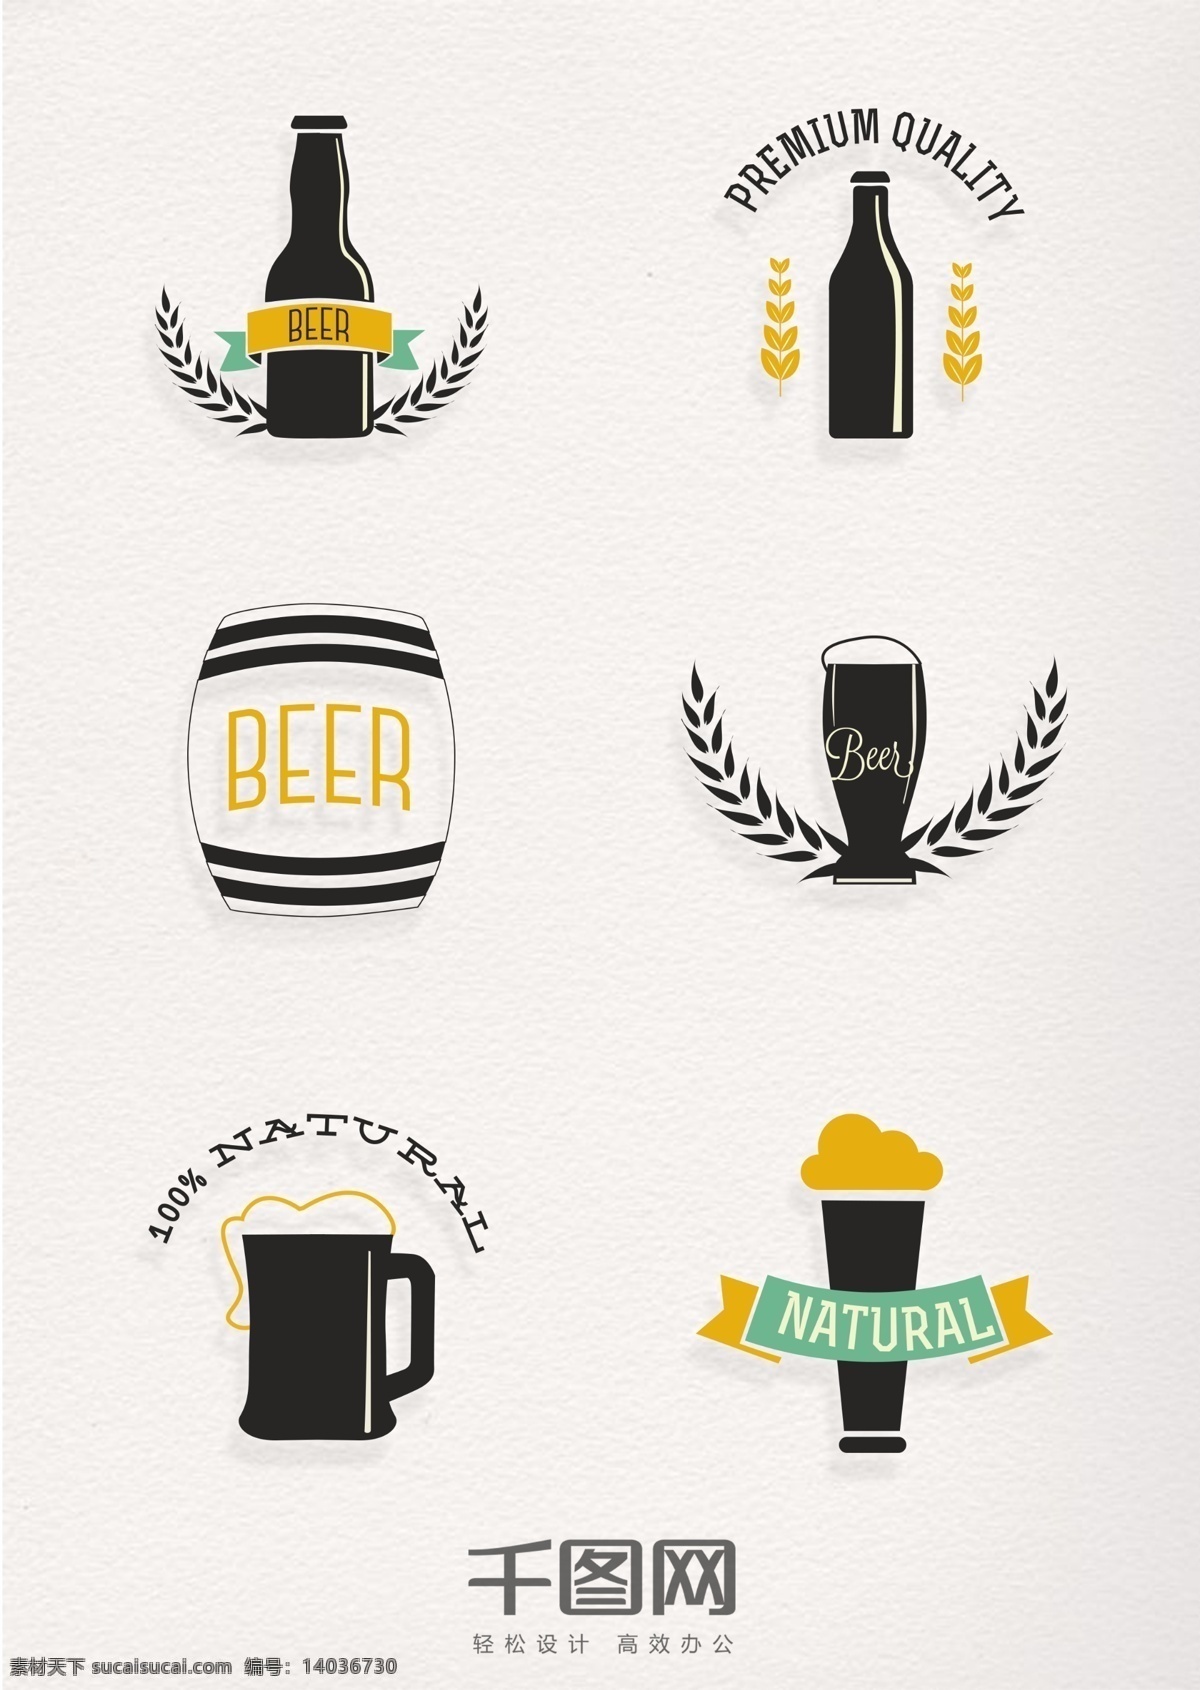 古典 风格 啤酒 元素 标识 复古 黑色 酒 啤酒杯 啤酒桶 啤酒瓶 啤酒沫 啤酒元素 啤酒标识